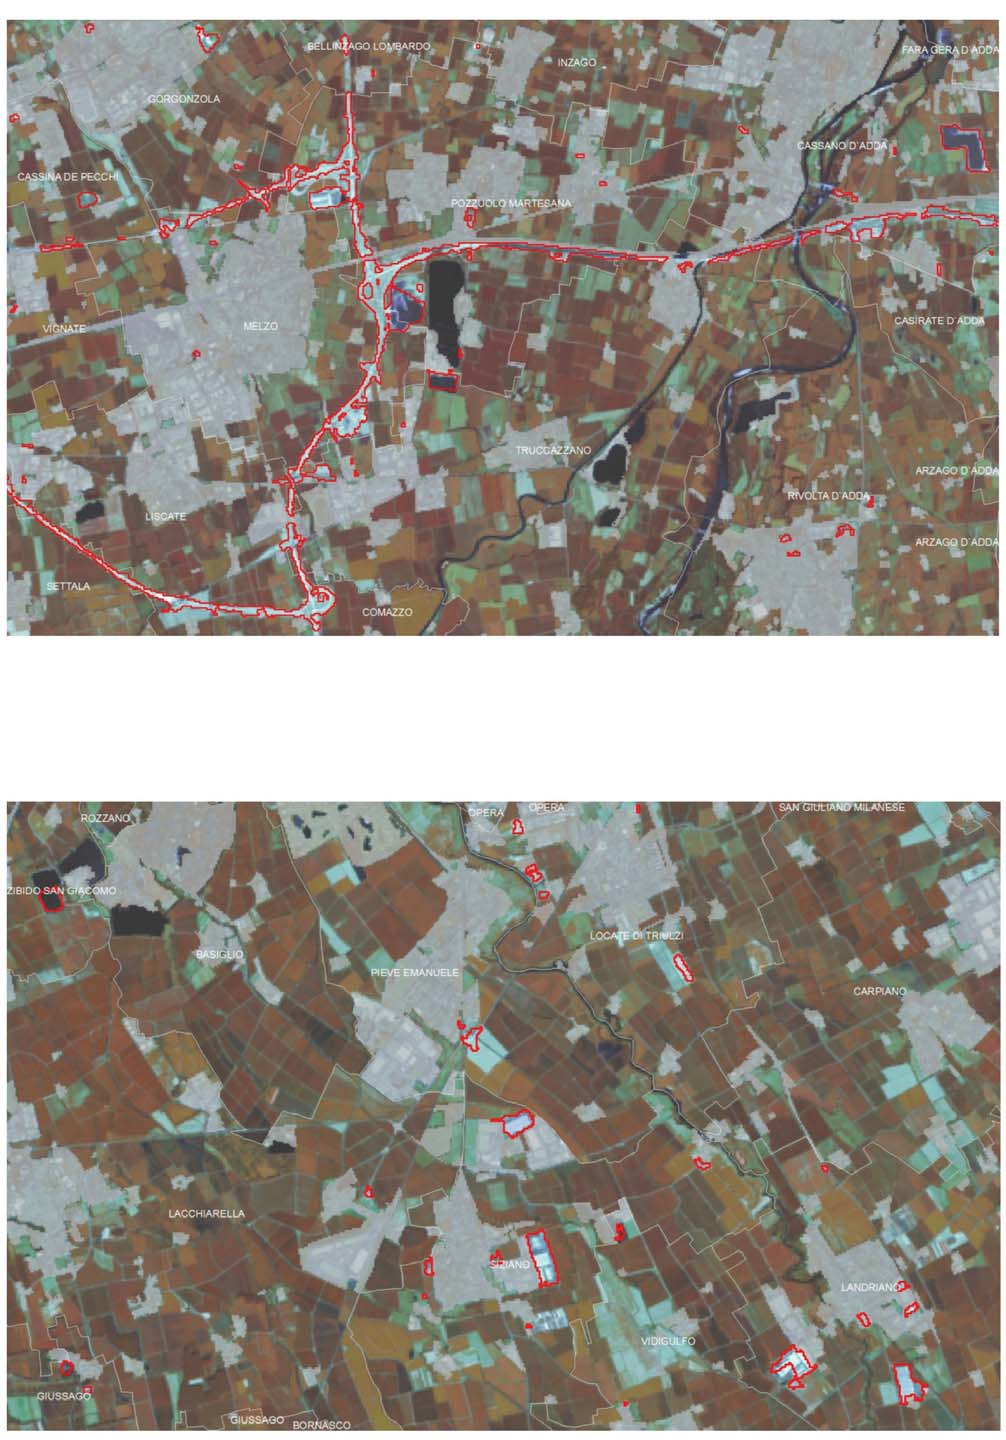 Fig. 3 Dettaglio relativo ad un area nell est milanese, su sfondo immagine satellitare Landsat8 del 10/8/13, delle aree identificate come consumo di suolo (aree di cantiere, nuove aree urbane, cave).